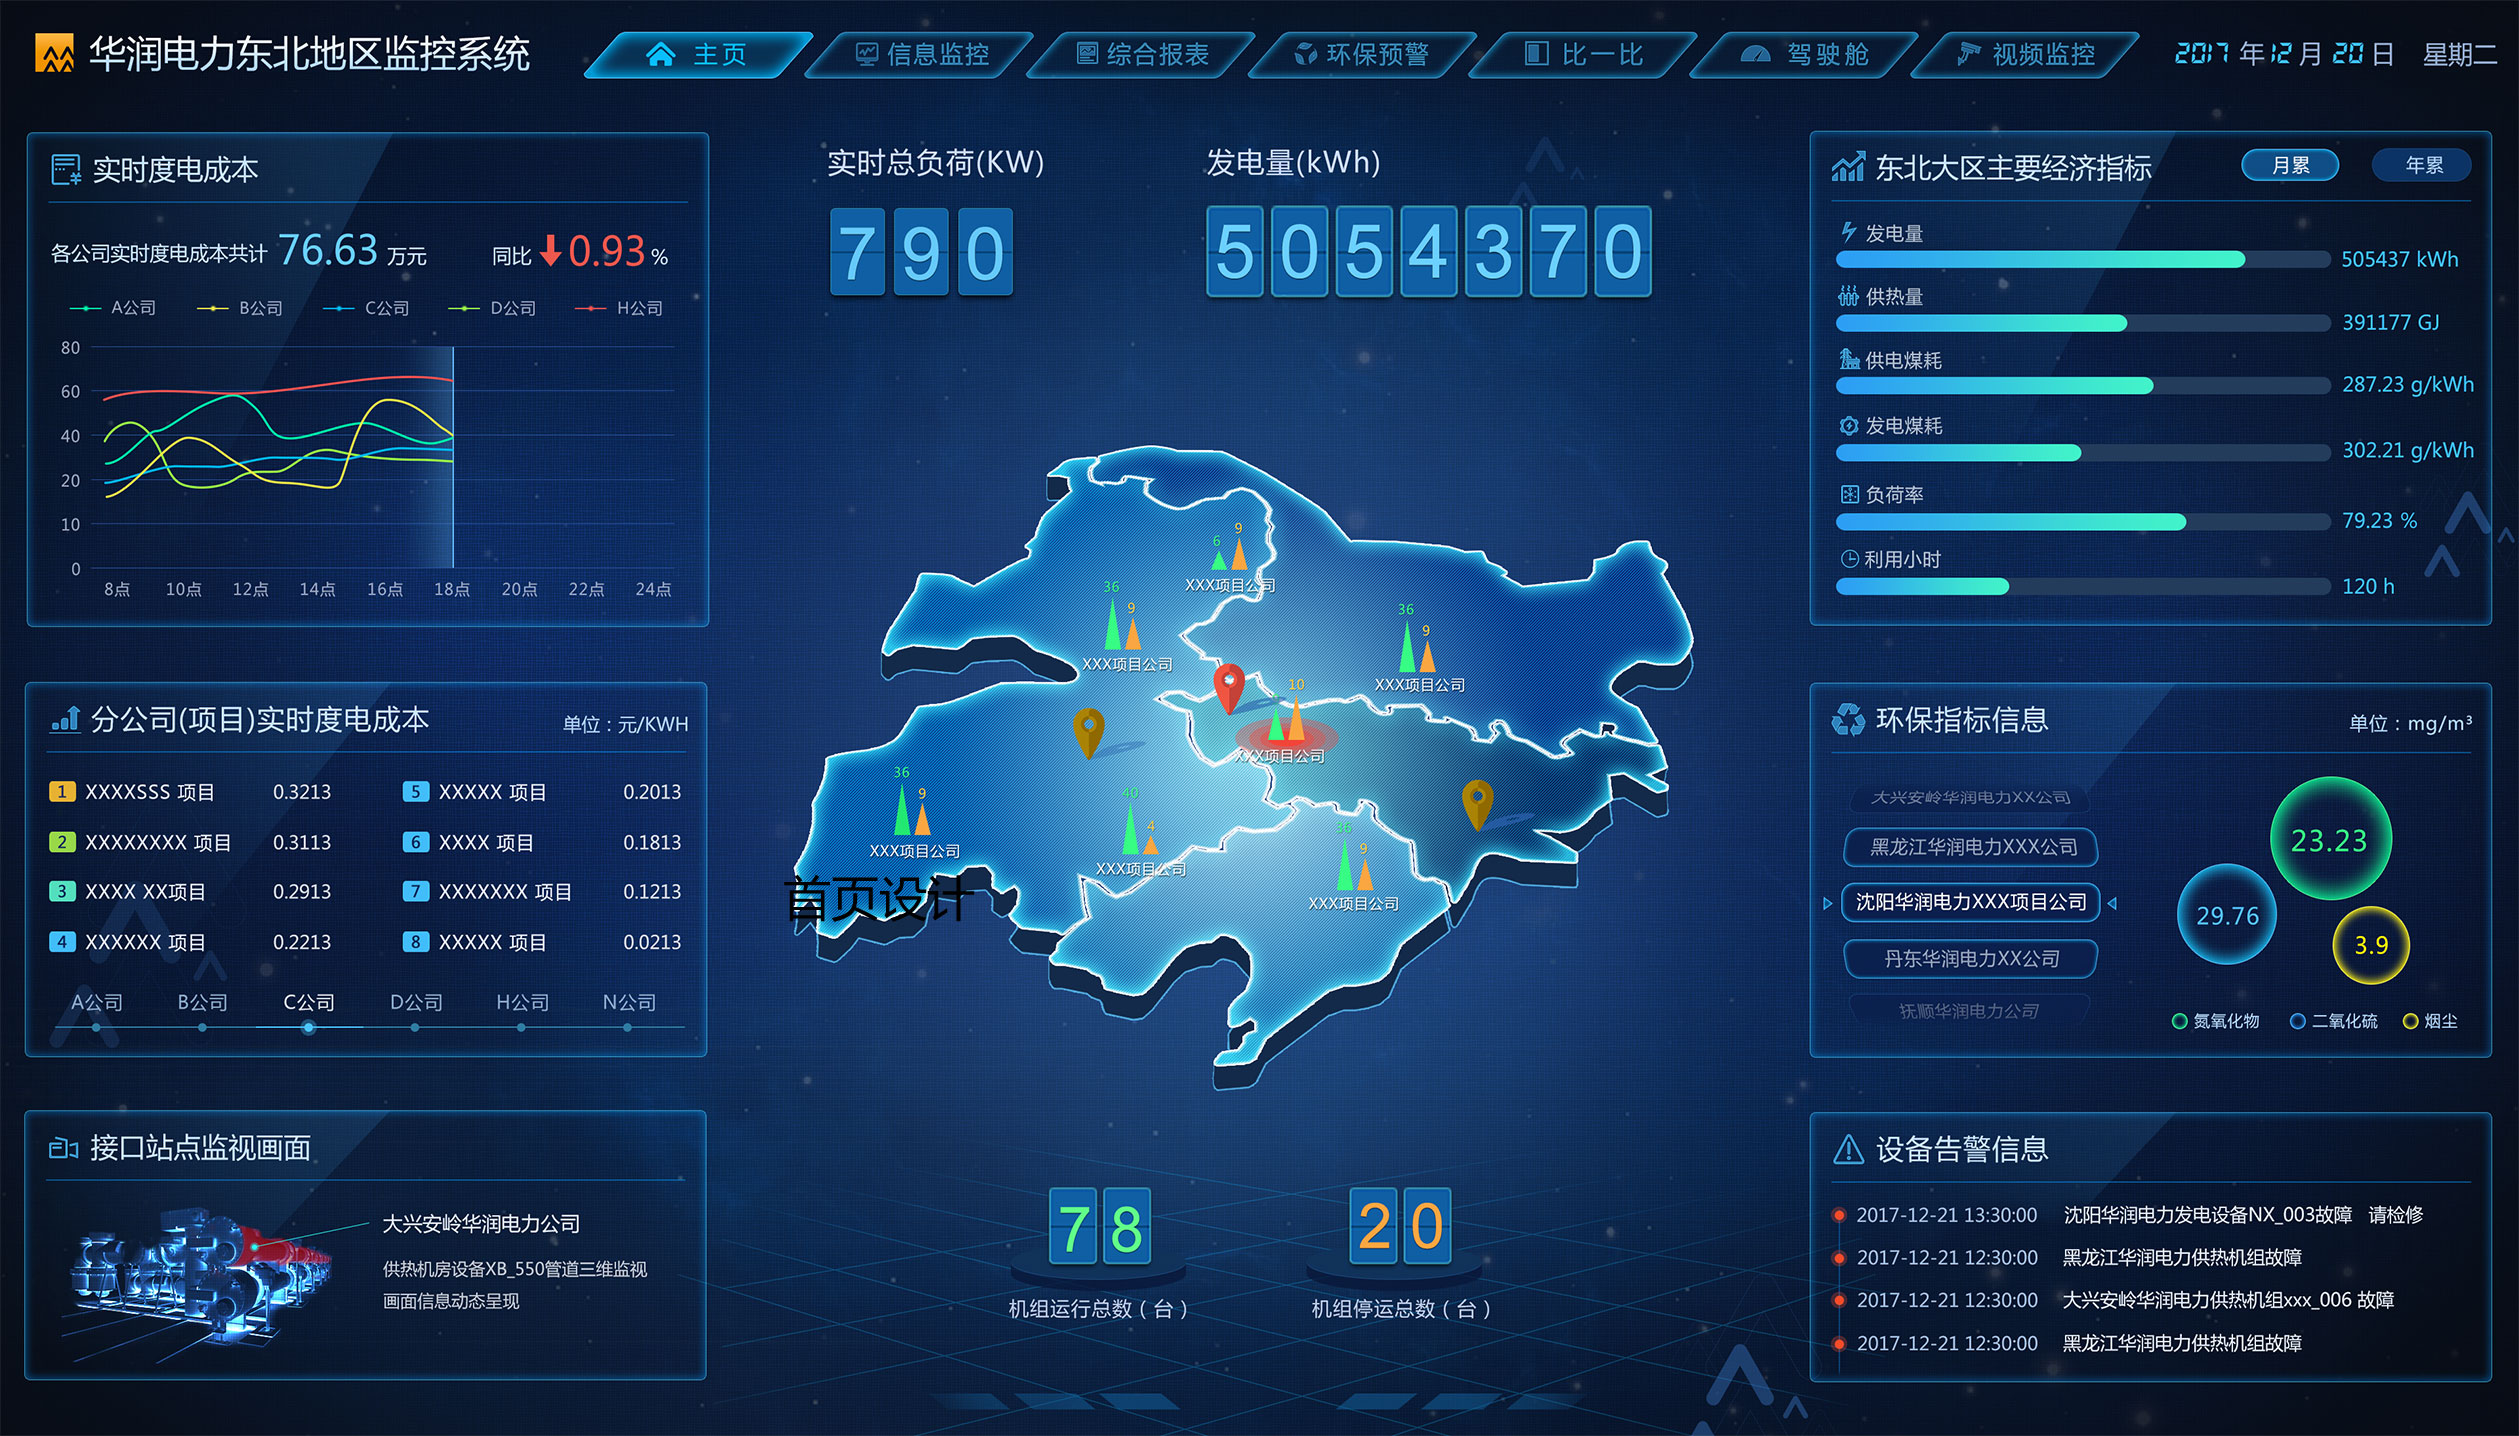 華潤電力東北大區大數據平臺界面設計大數據表圖化直觀形象展示